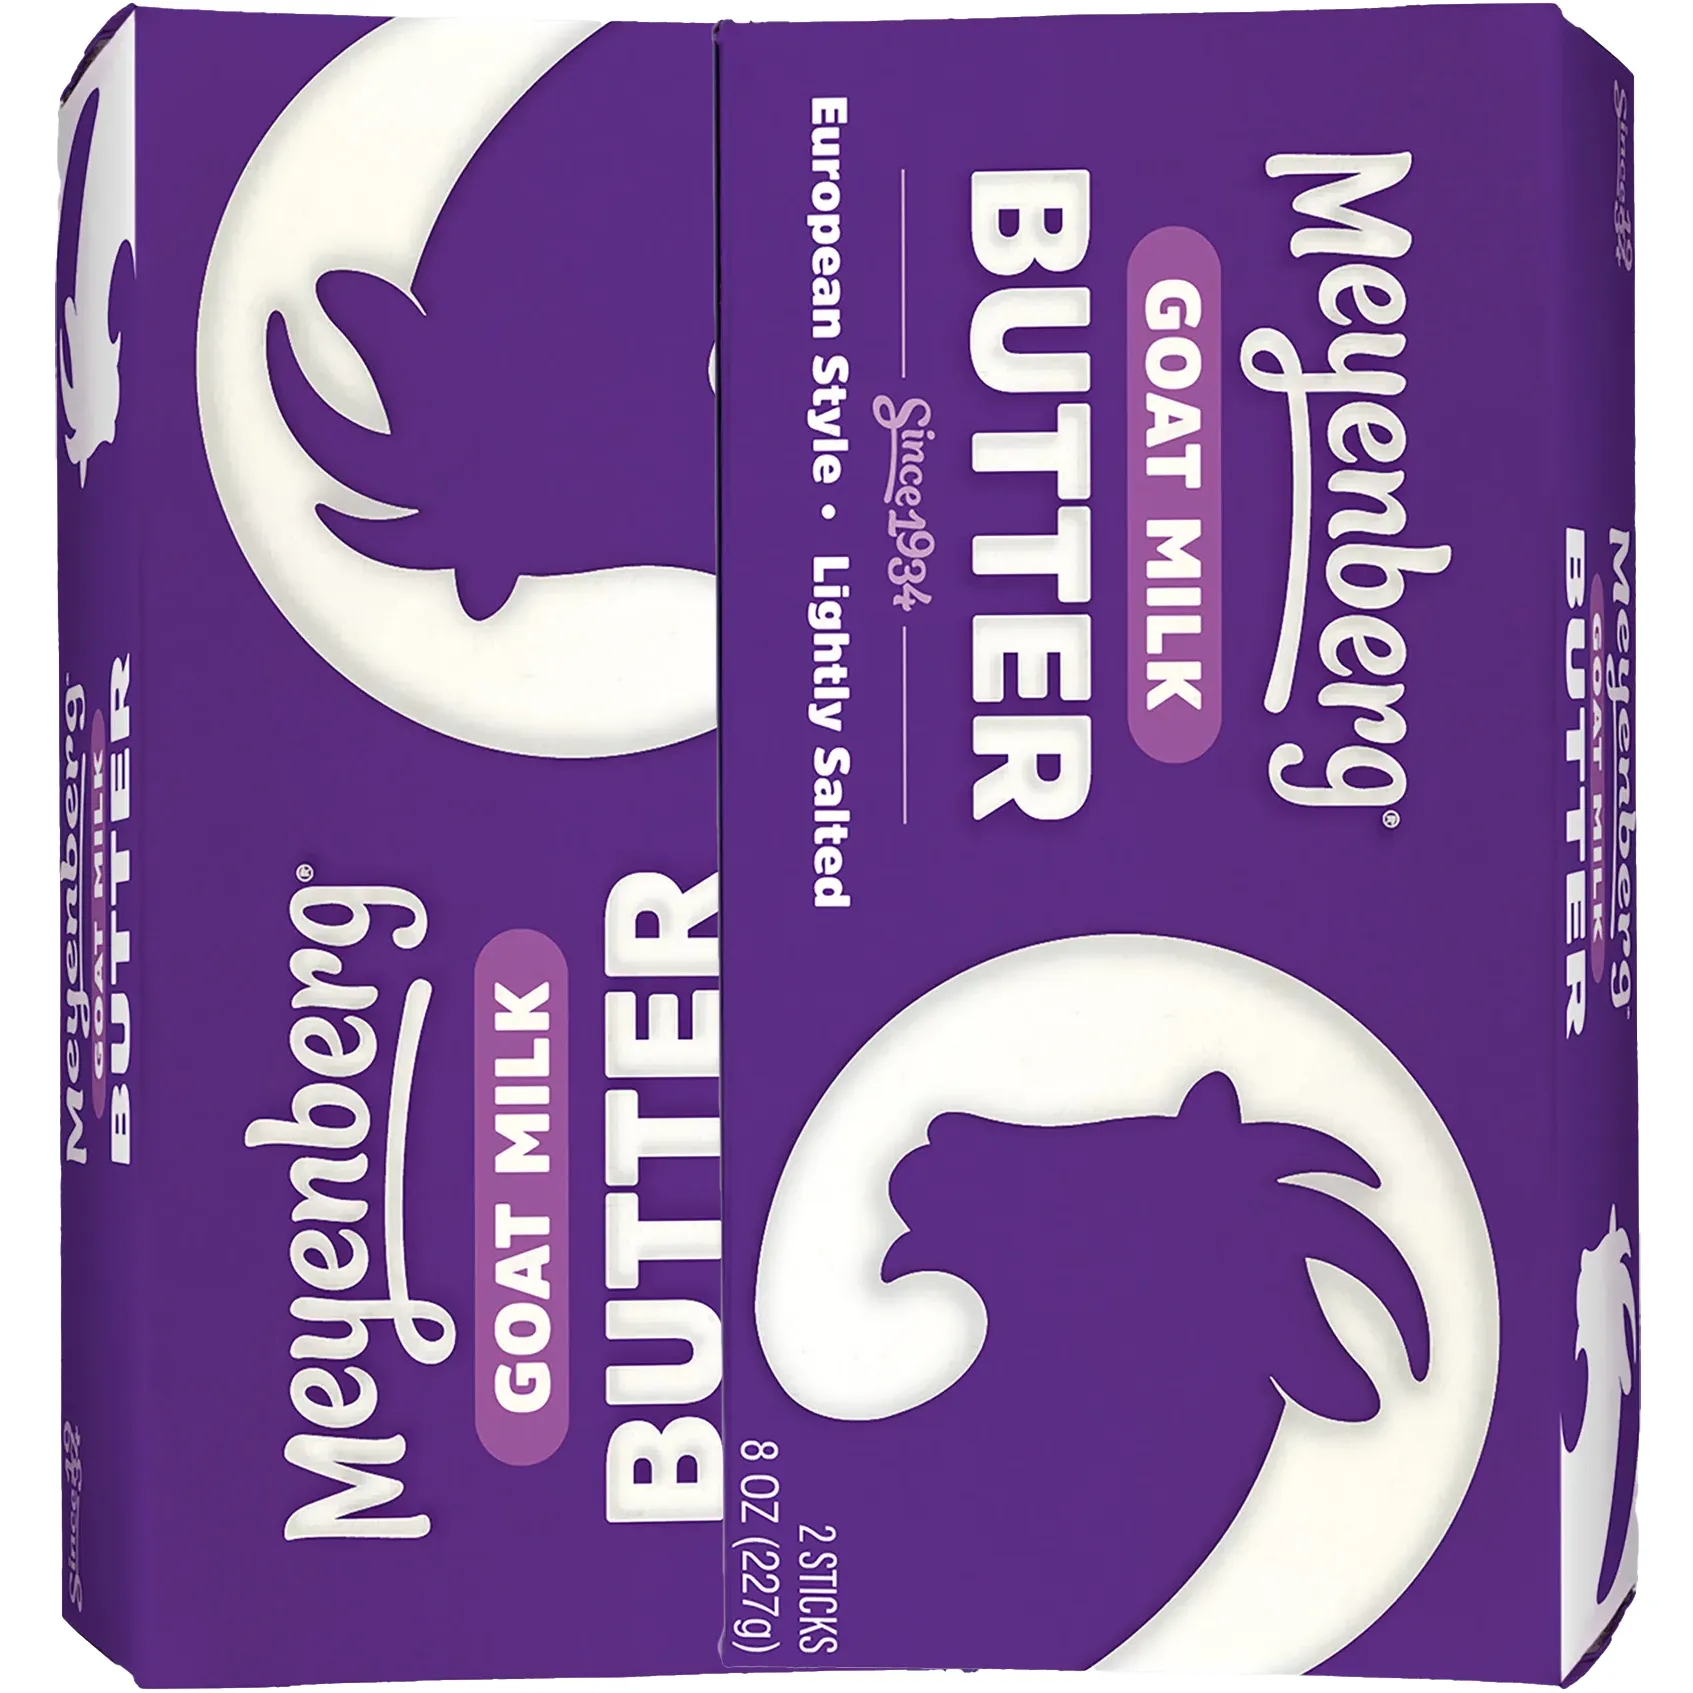 Free Goat Milk Butter By Meyenberg